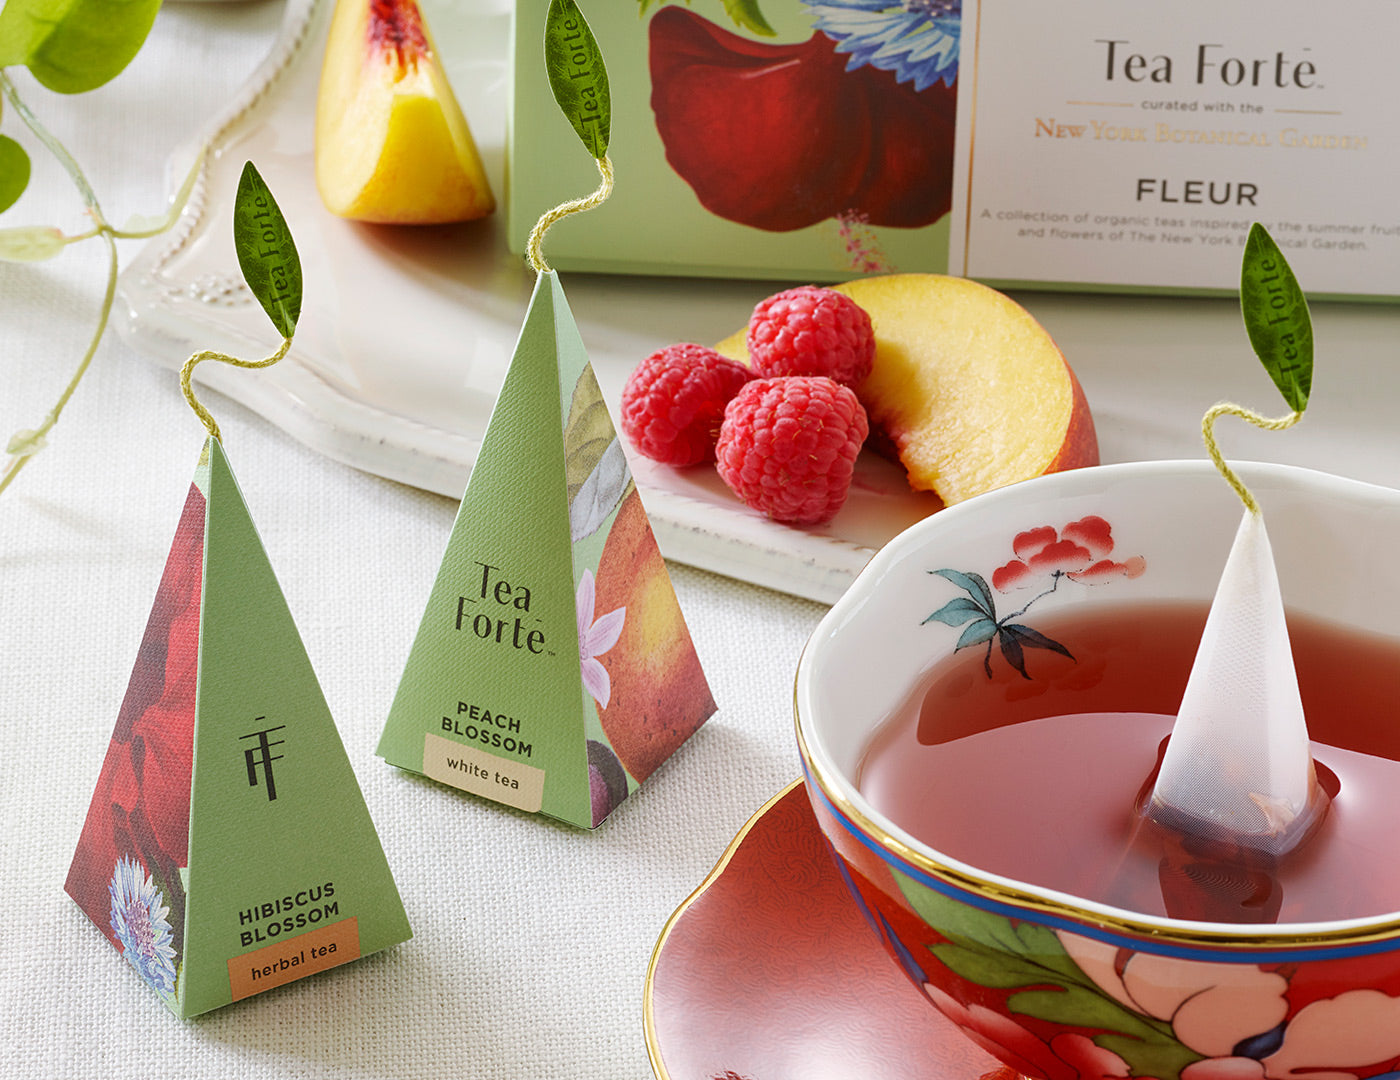 Fleur tea assortment on a table